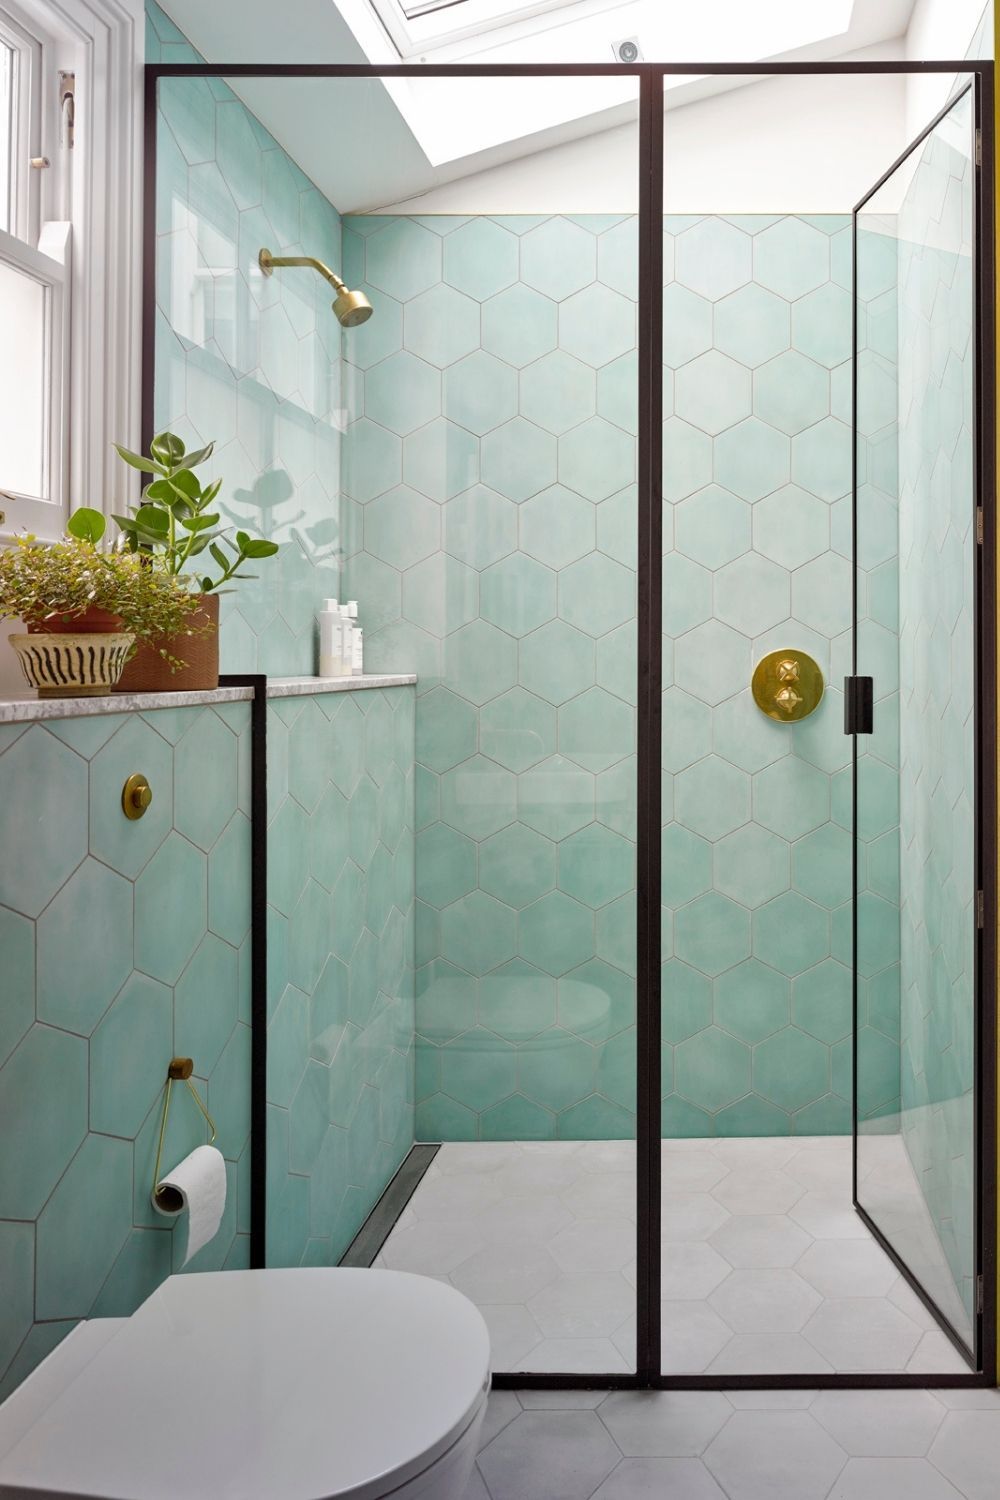 evoke projects ltd bespoke shower design